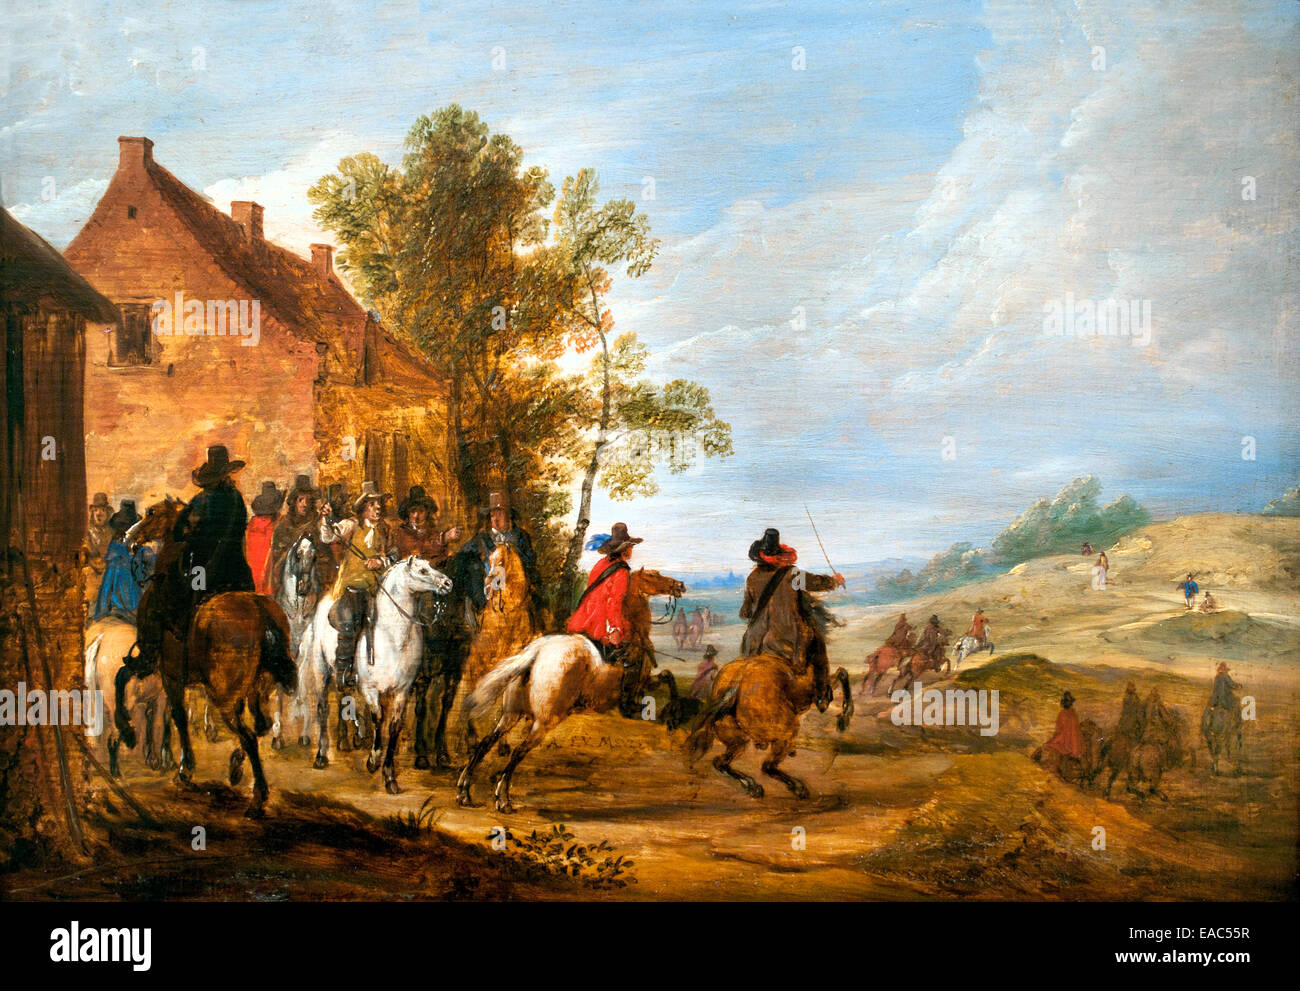 Cavaliers près d'une masure - Cavaliers près d'un shack Adam Frans Van der Meulen 1632-1690 Belgique belge flamande Banque D'Images